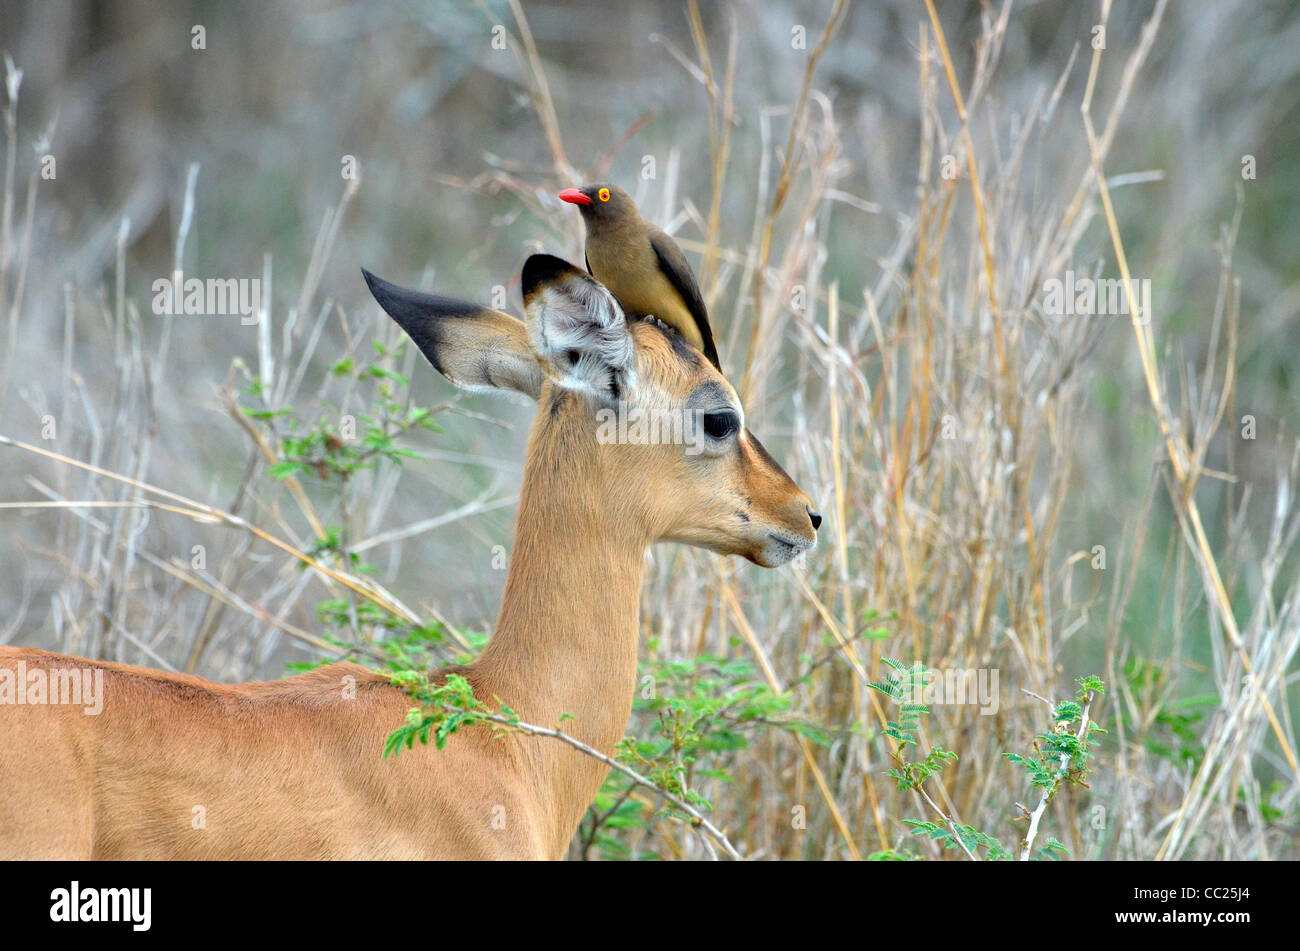 Krüger Nationalpark in Südafrika, weltweit bekannt für Tierbeobachtungen zu erschwinglichen Preisen. Baby-Impala mit Oxpeckecker am Kopf Stockfoto